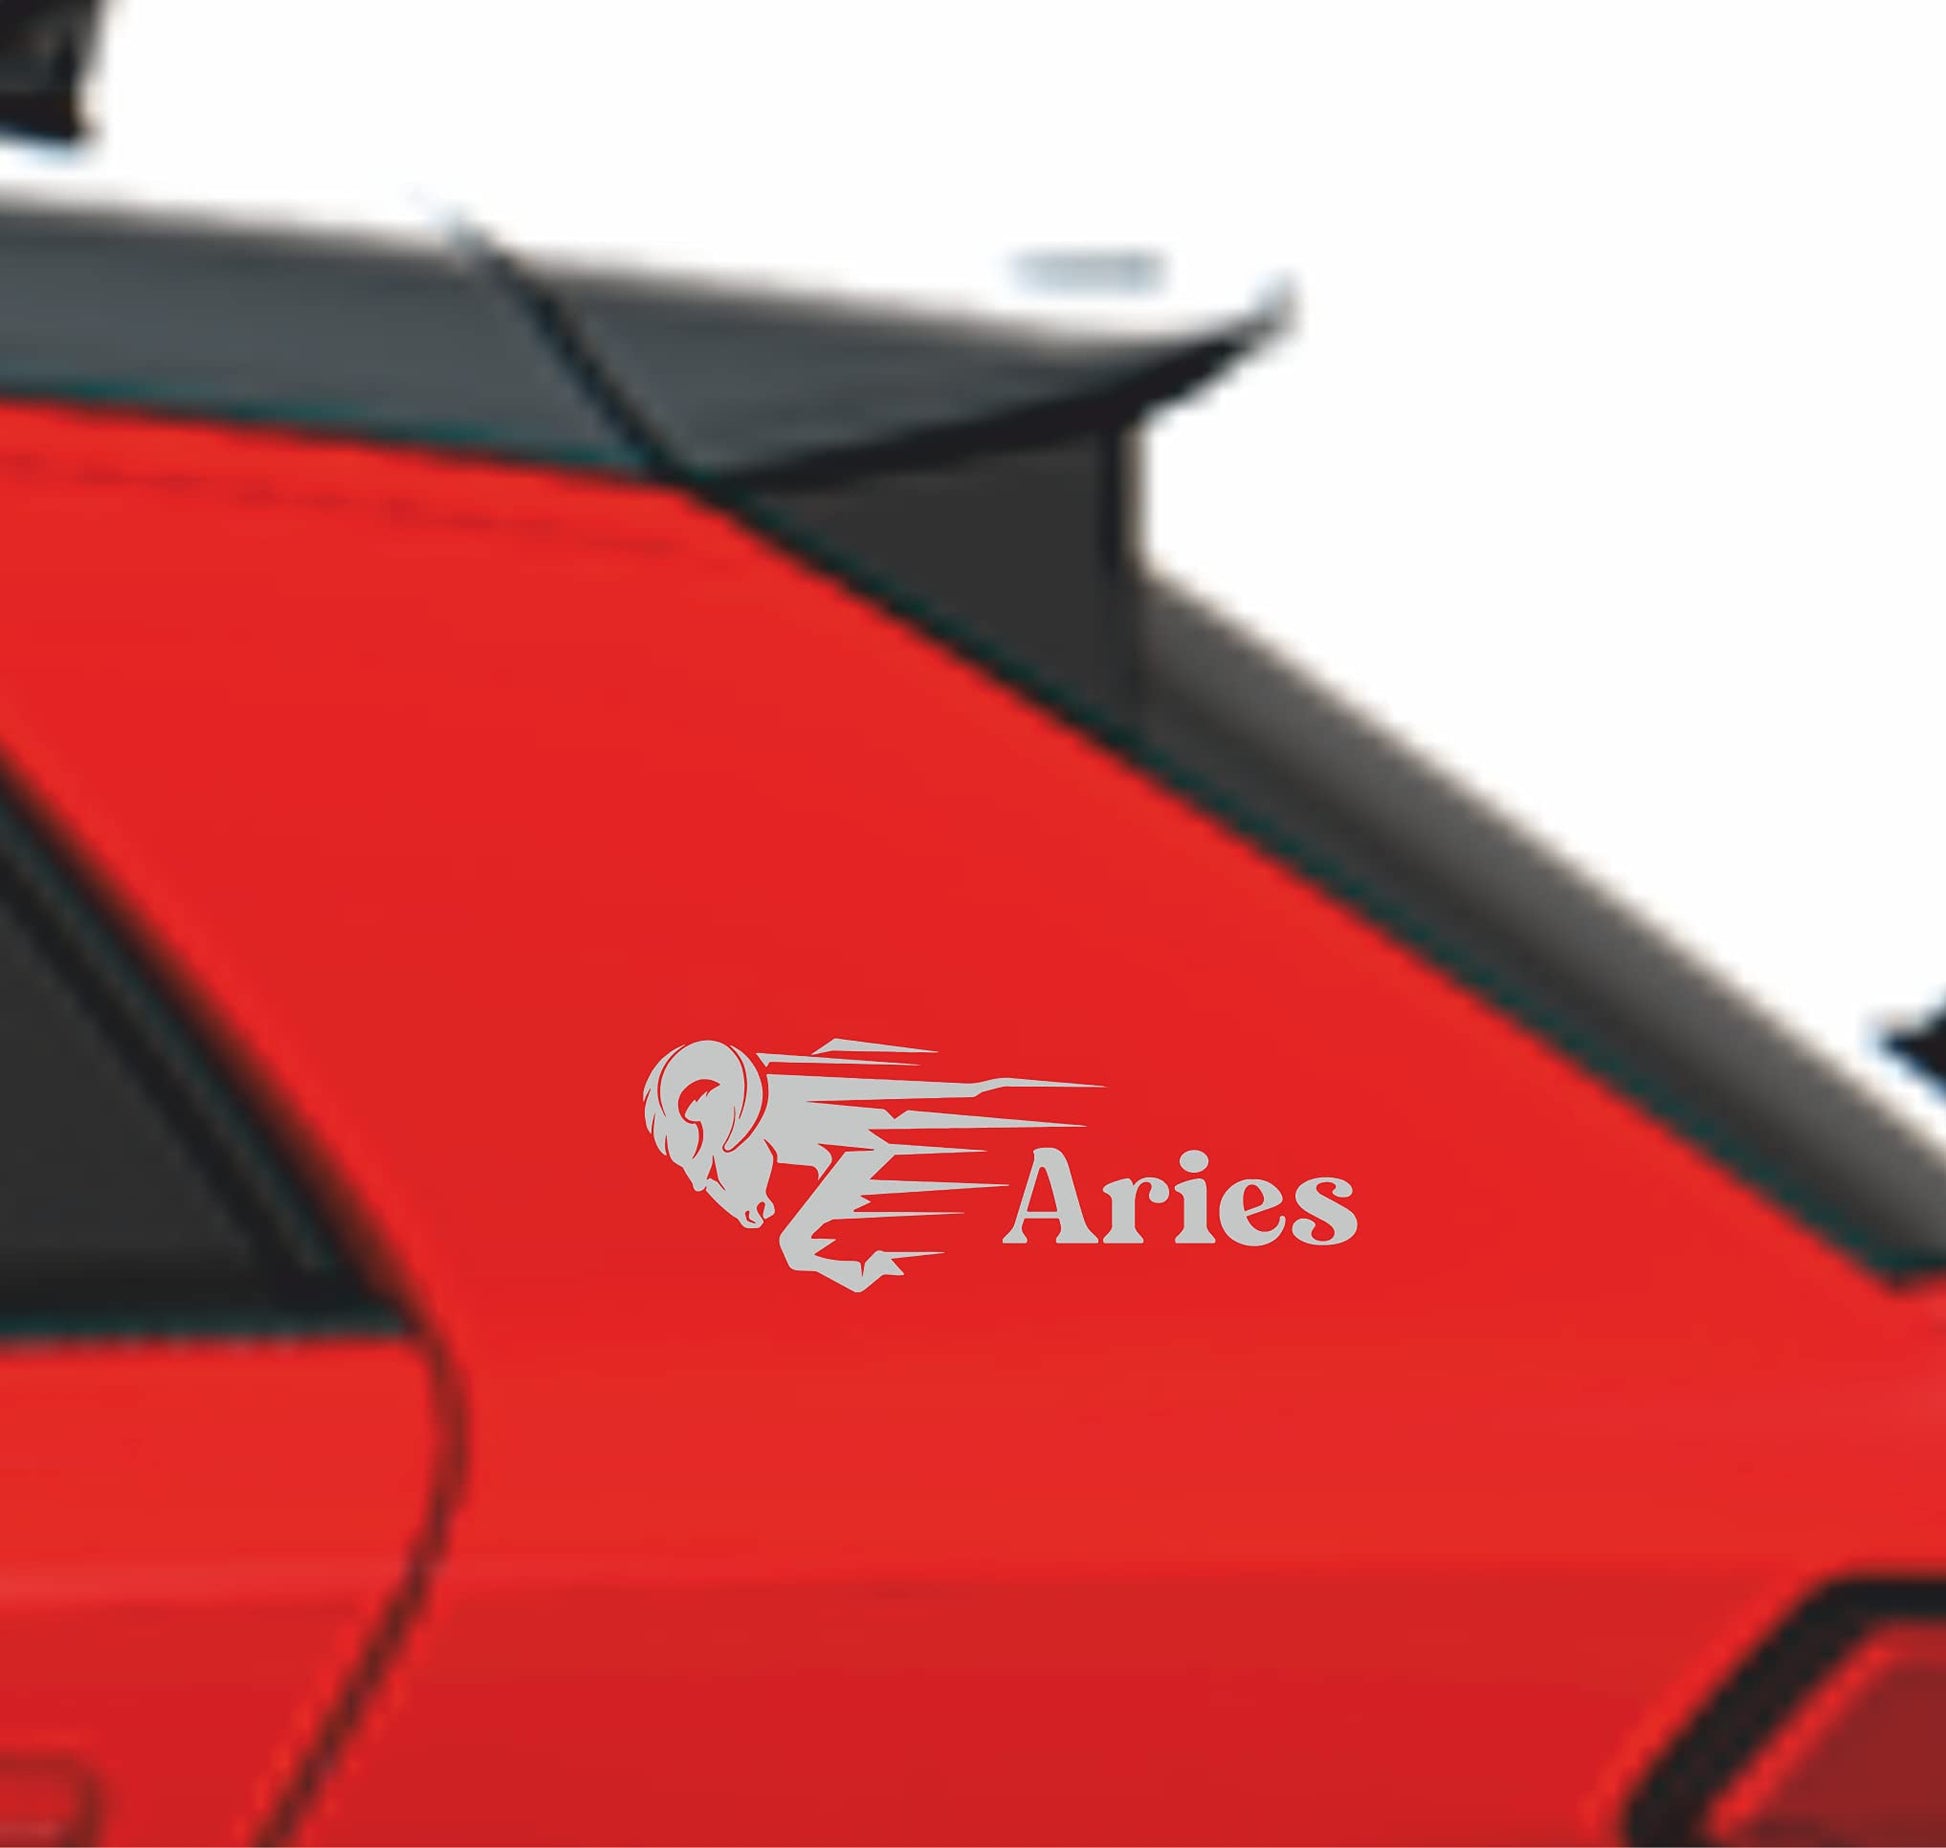 Adesivo Segno Zodiacale ARIETE- Adesive da Auto moto casco casa home camera - vinile colore a scelta COD.0025 a €12.99 solo da DualColorStampe